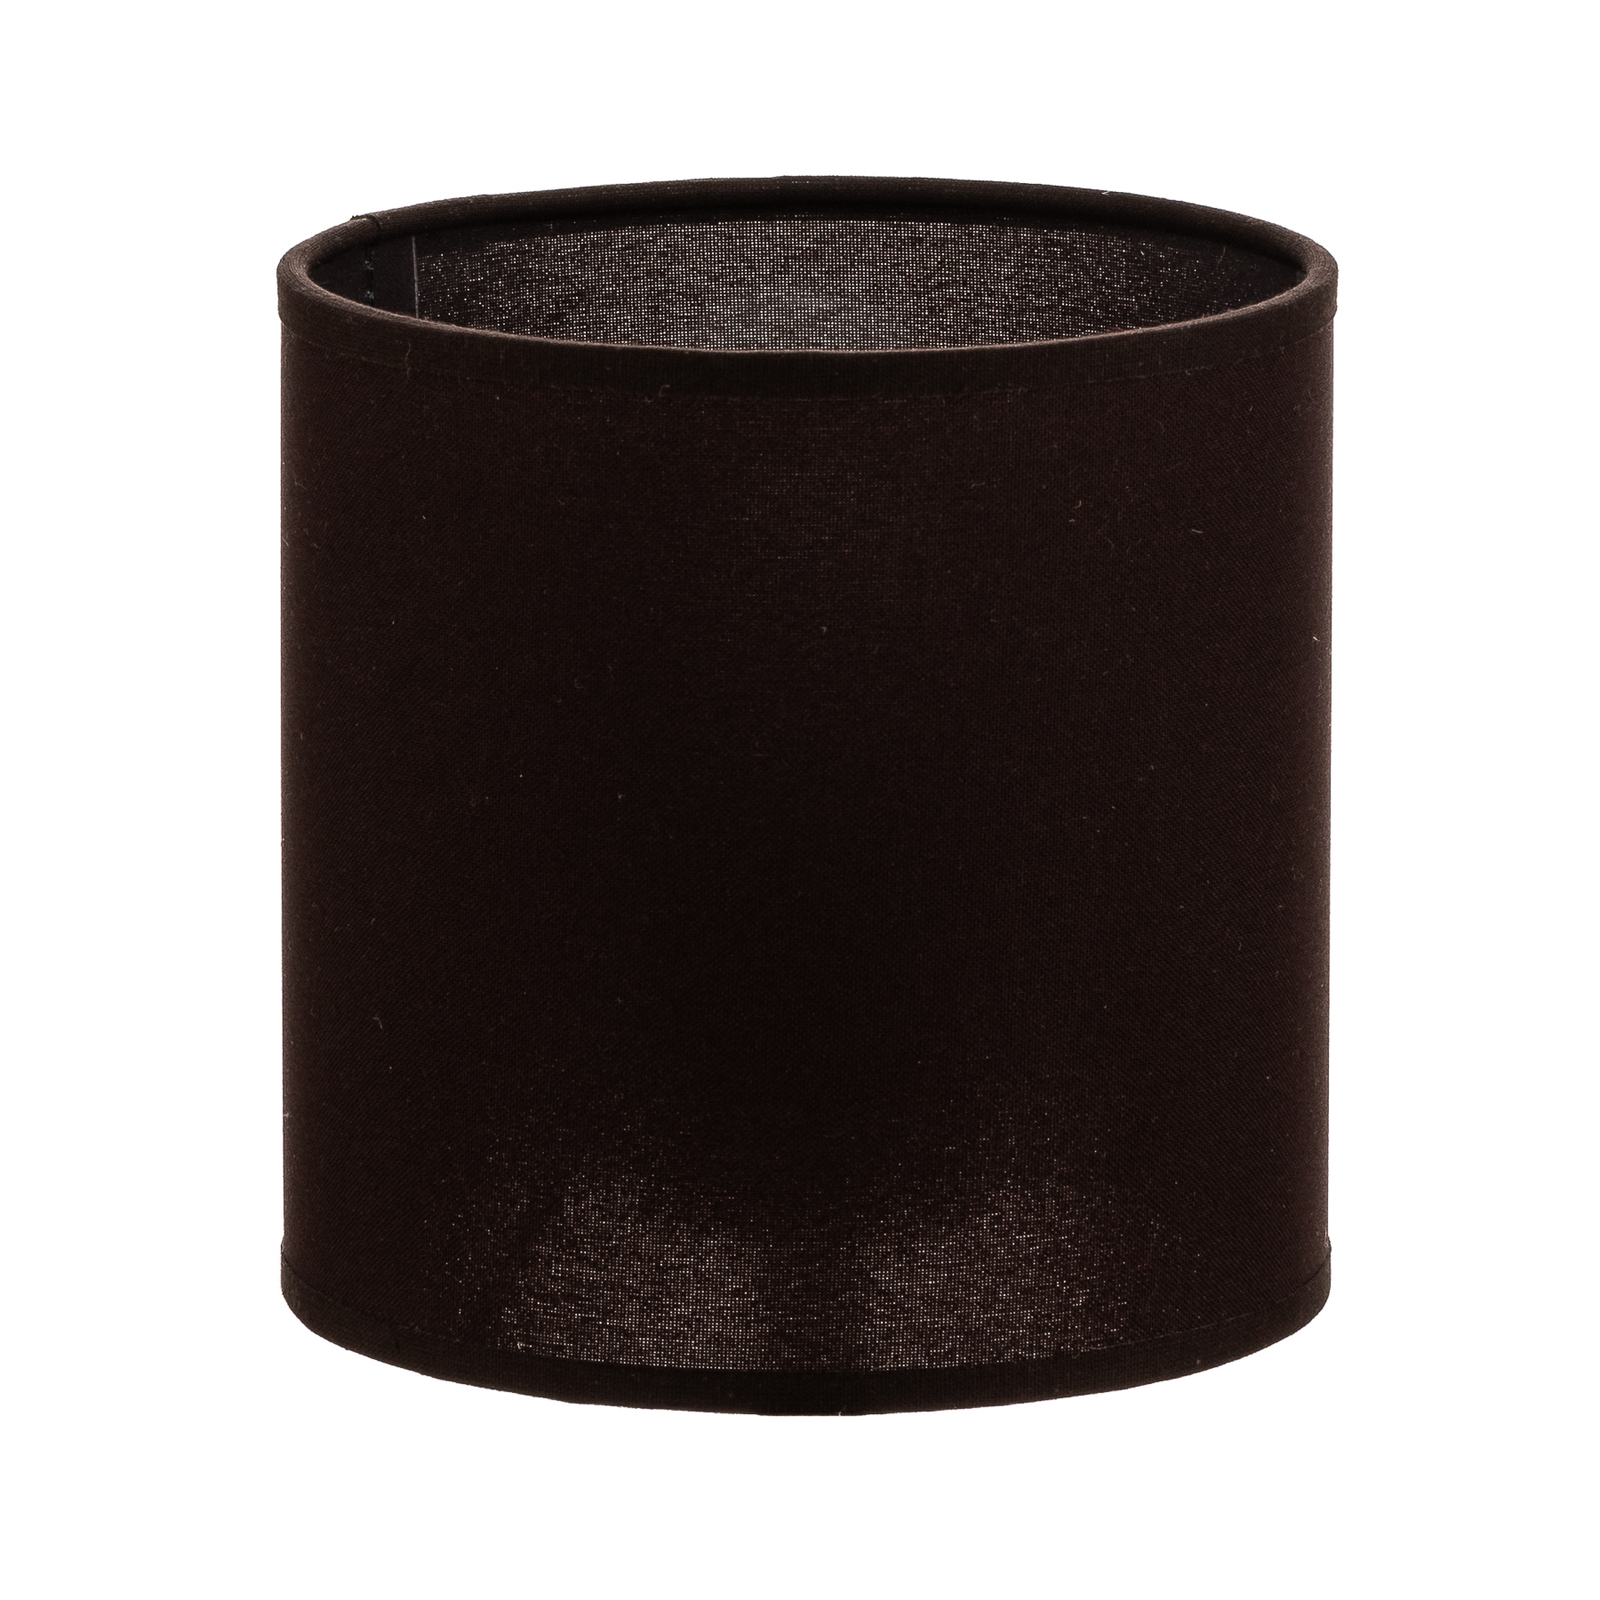 Roller lámpaernyő sötétbarna Ø 15 cm, 15 cm magas